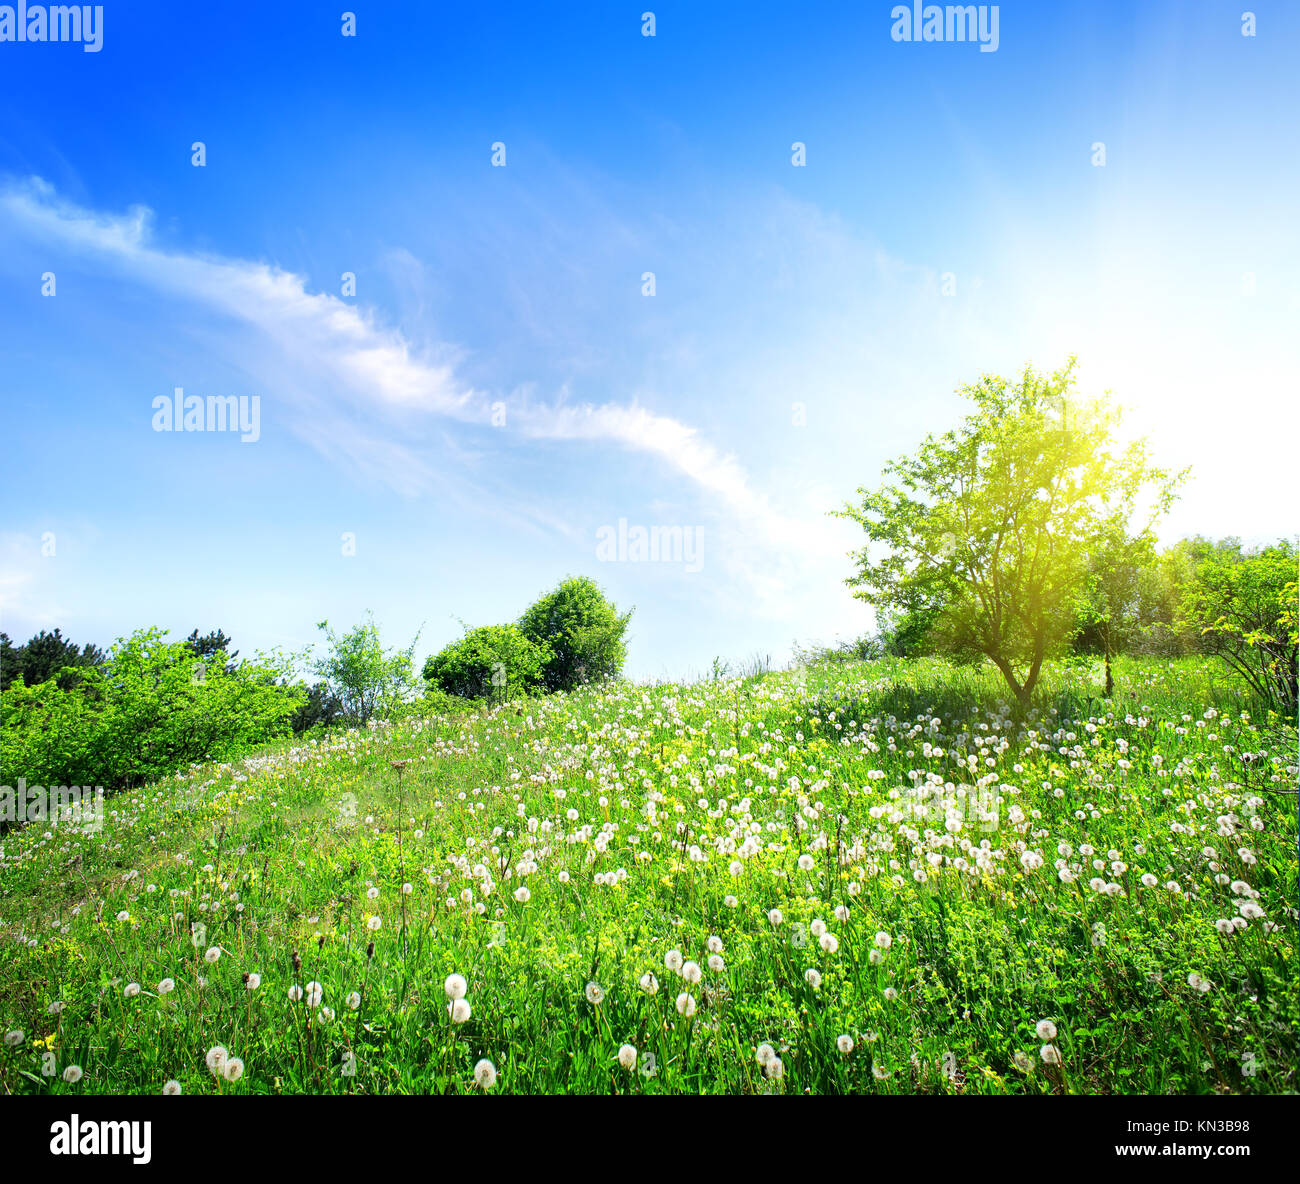 Dandelions on a green meadow in sunlight. Stock Photo